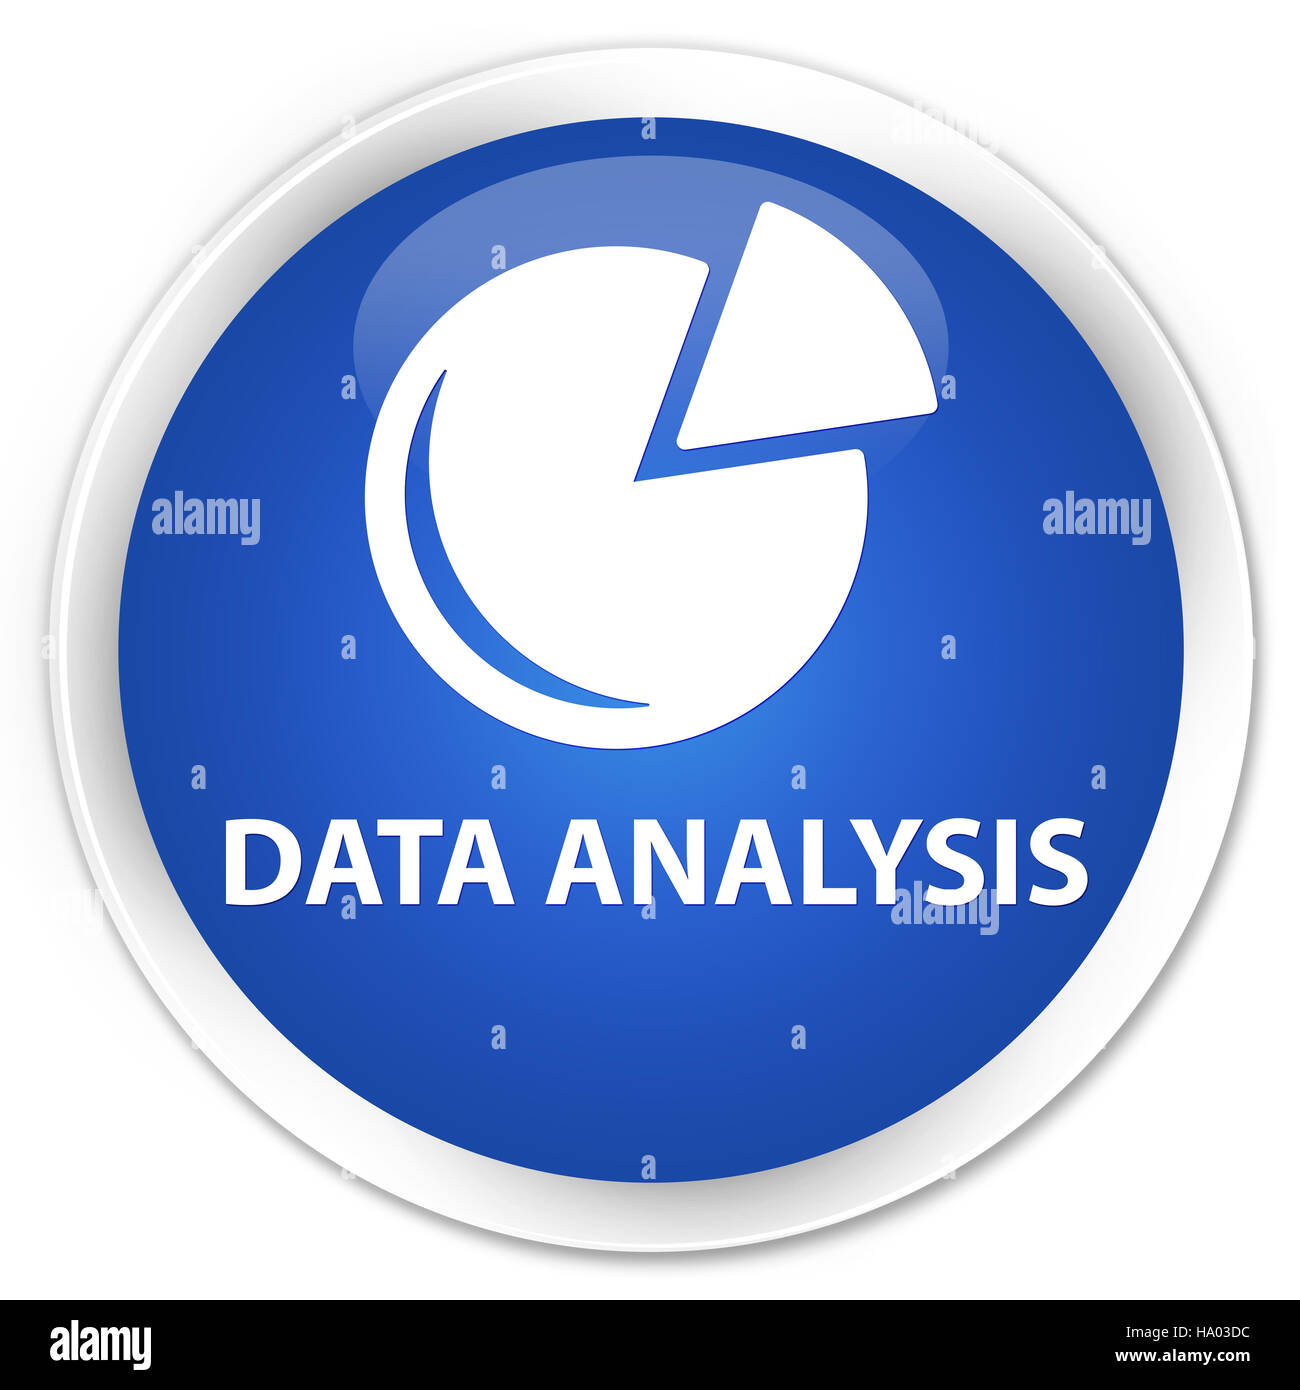 L'analyse des données (symbole graphique) isolé sur le bouton rond bleu premium abstract illustration Banque D'Images